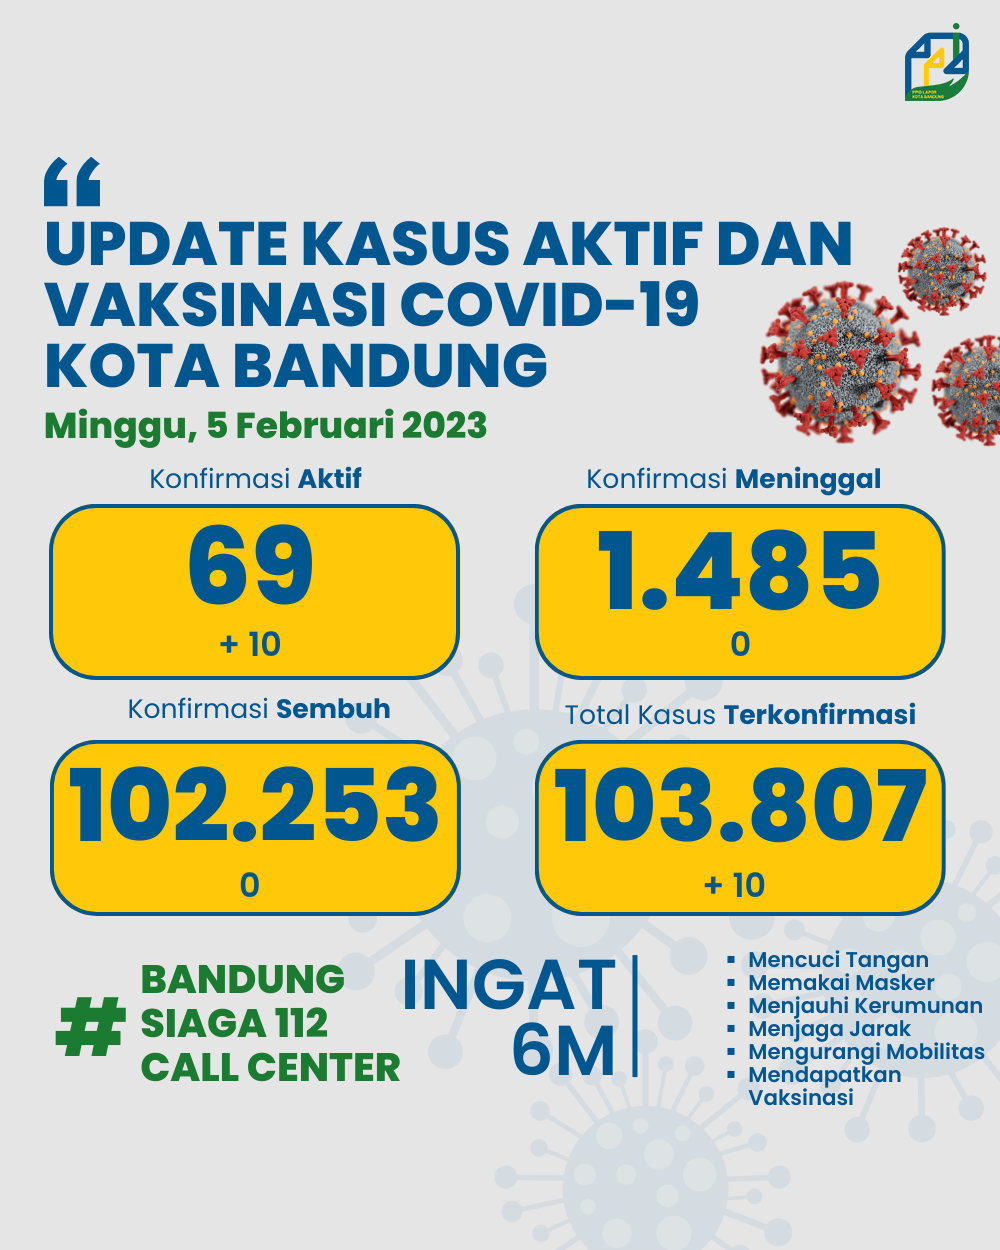 UPDATE STATISTIK COVID-19 DI KOTA BANDUNG PER TANGGAL 5 FEBRUARI 2023